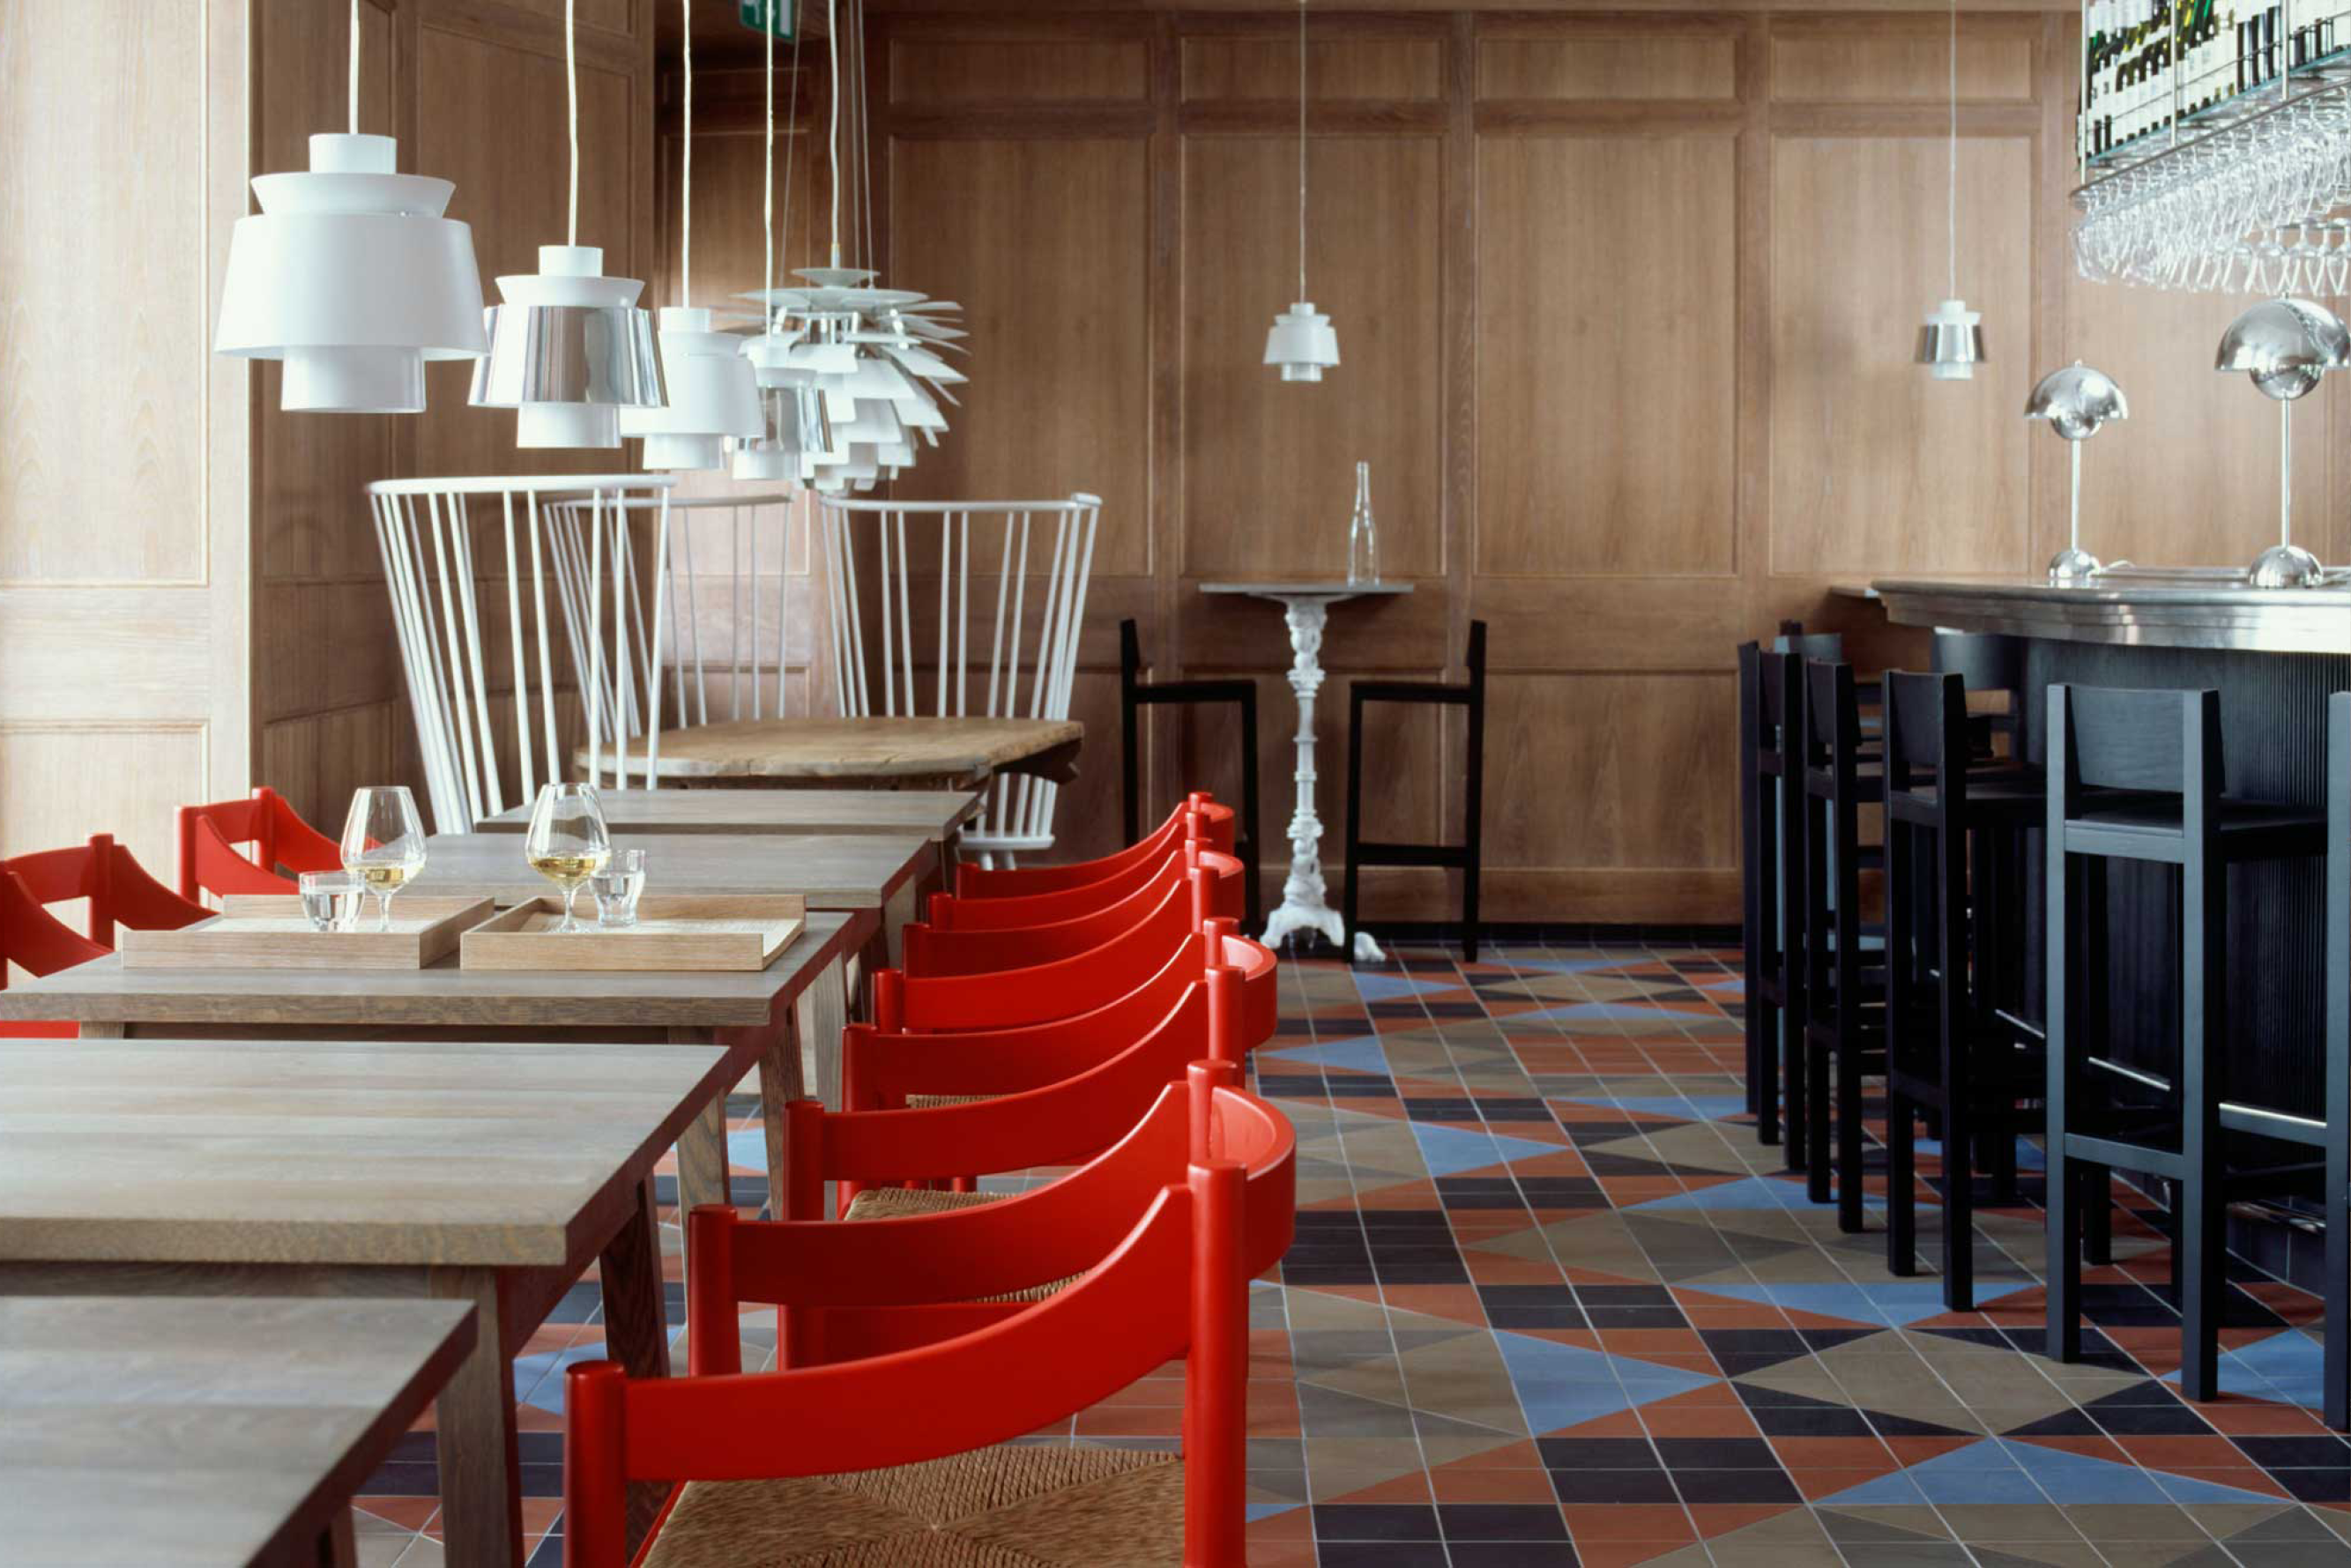 Studio Ilse Mathia Dahlgren Restaurant a modern restaurant design